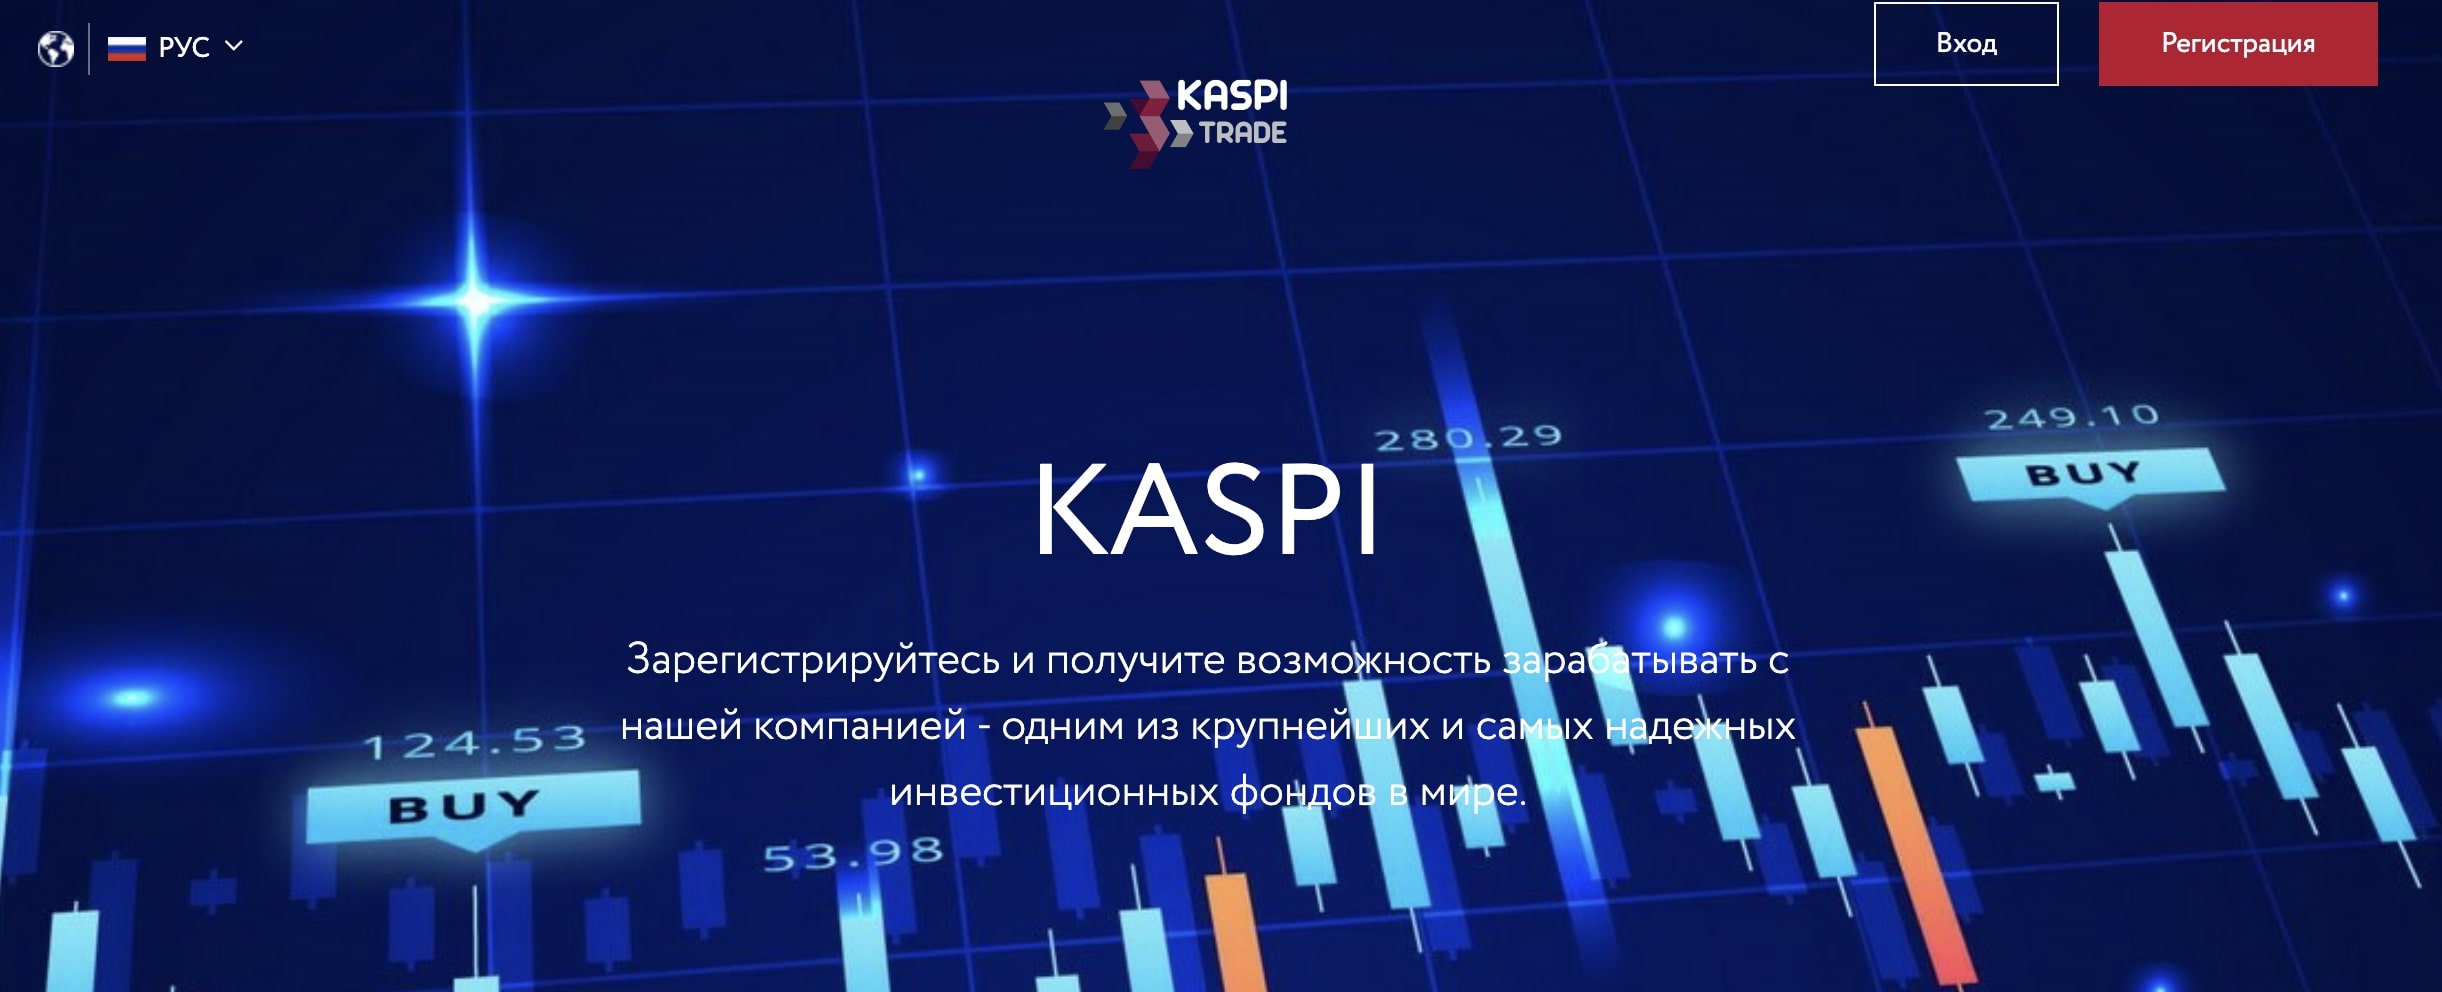 Kaspi Trade — брокер, который с радостью сольет ваш депозит